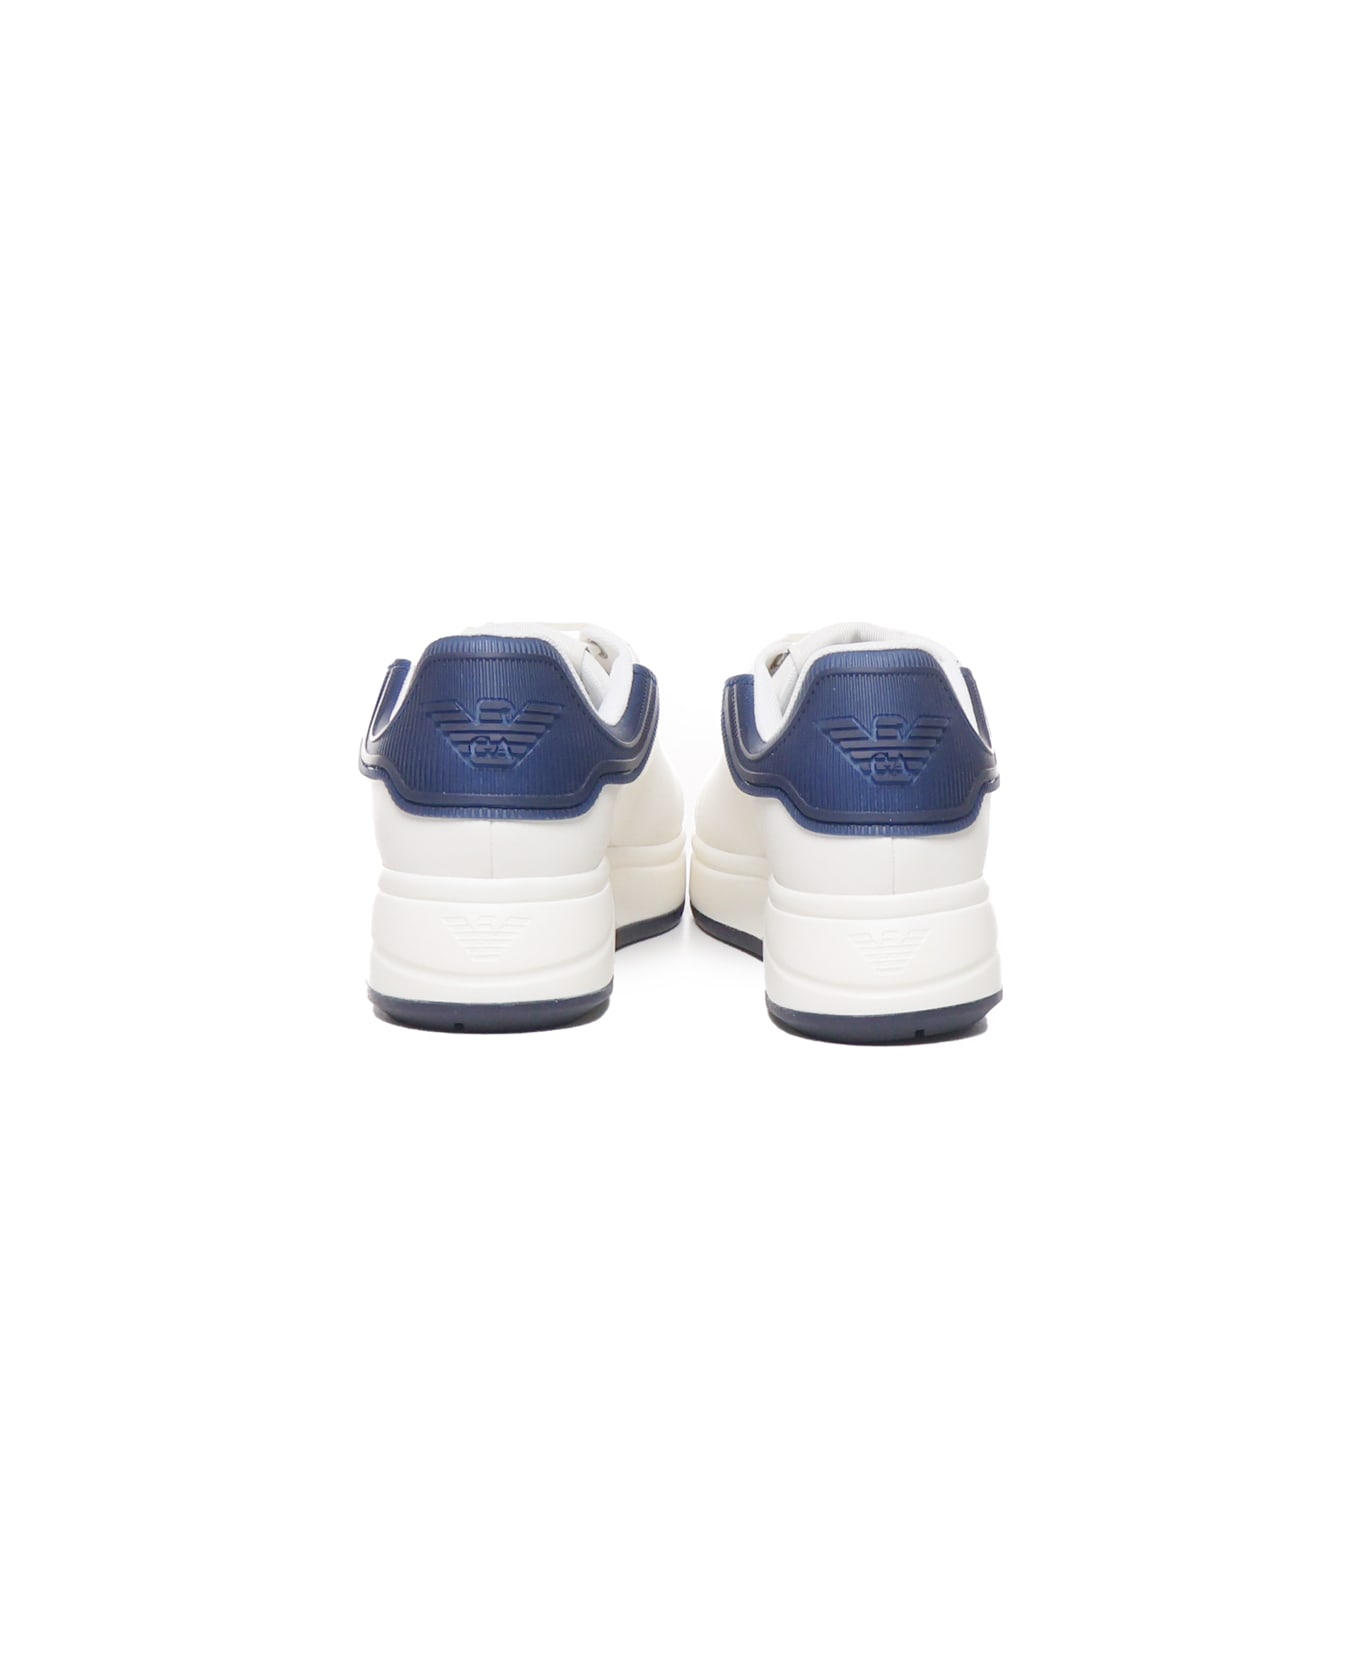 Giorgio Armani Sneakers With Contrasting Rivet Giorgio Armani - White, blue